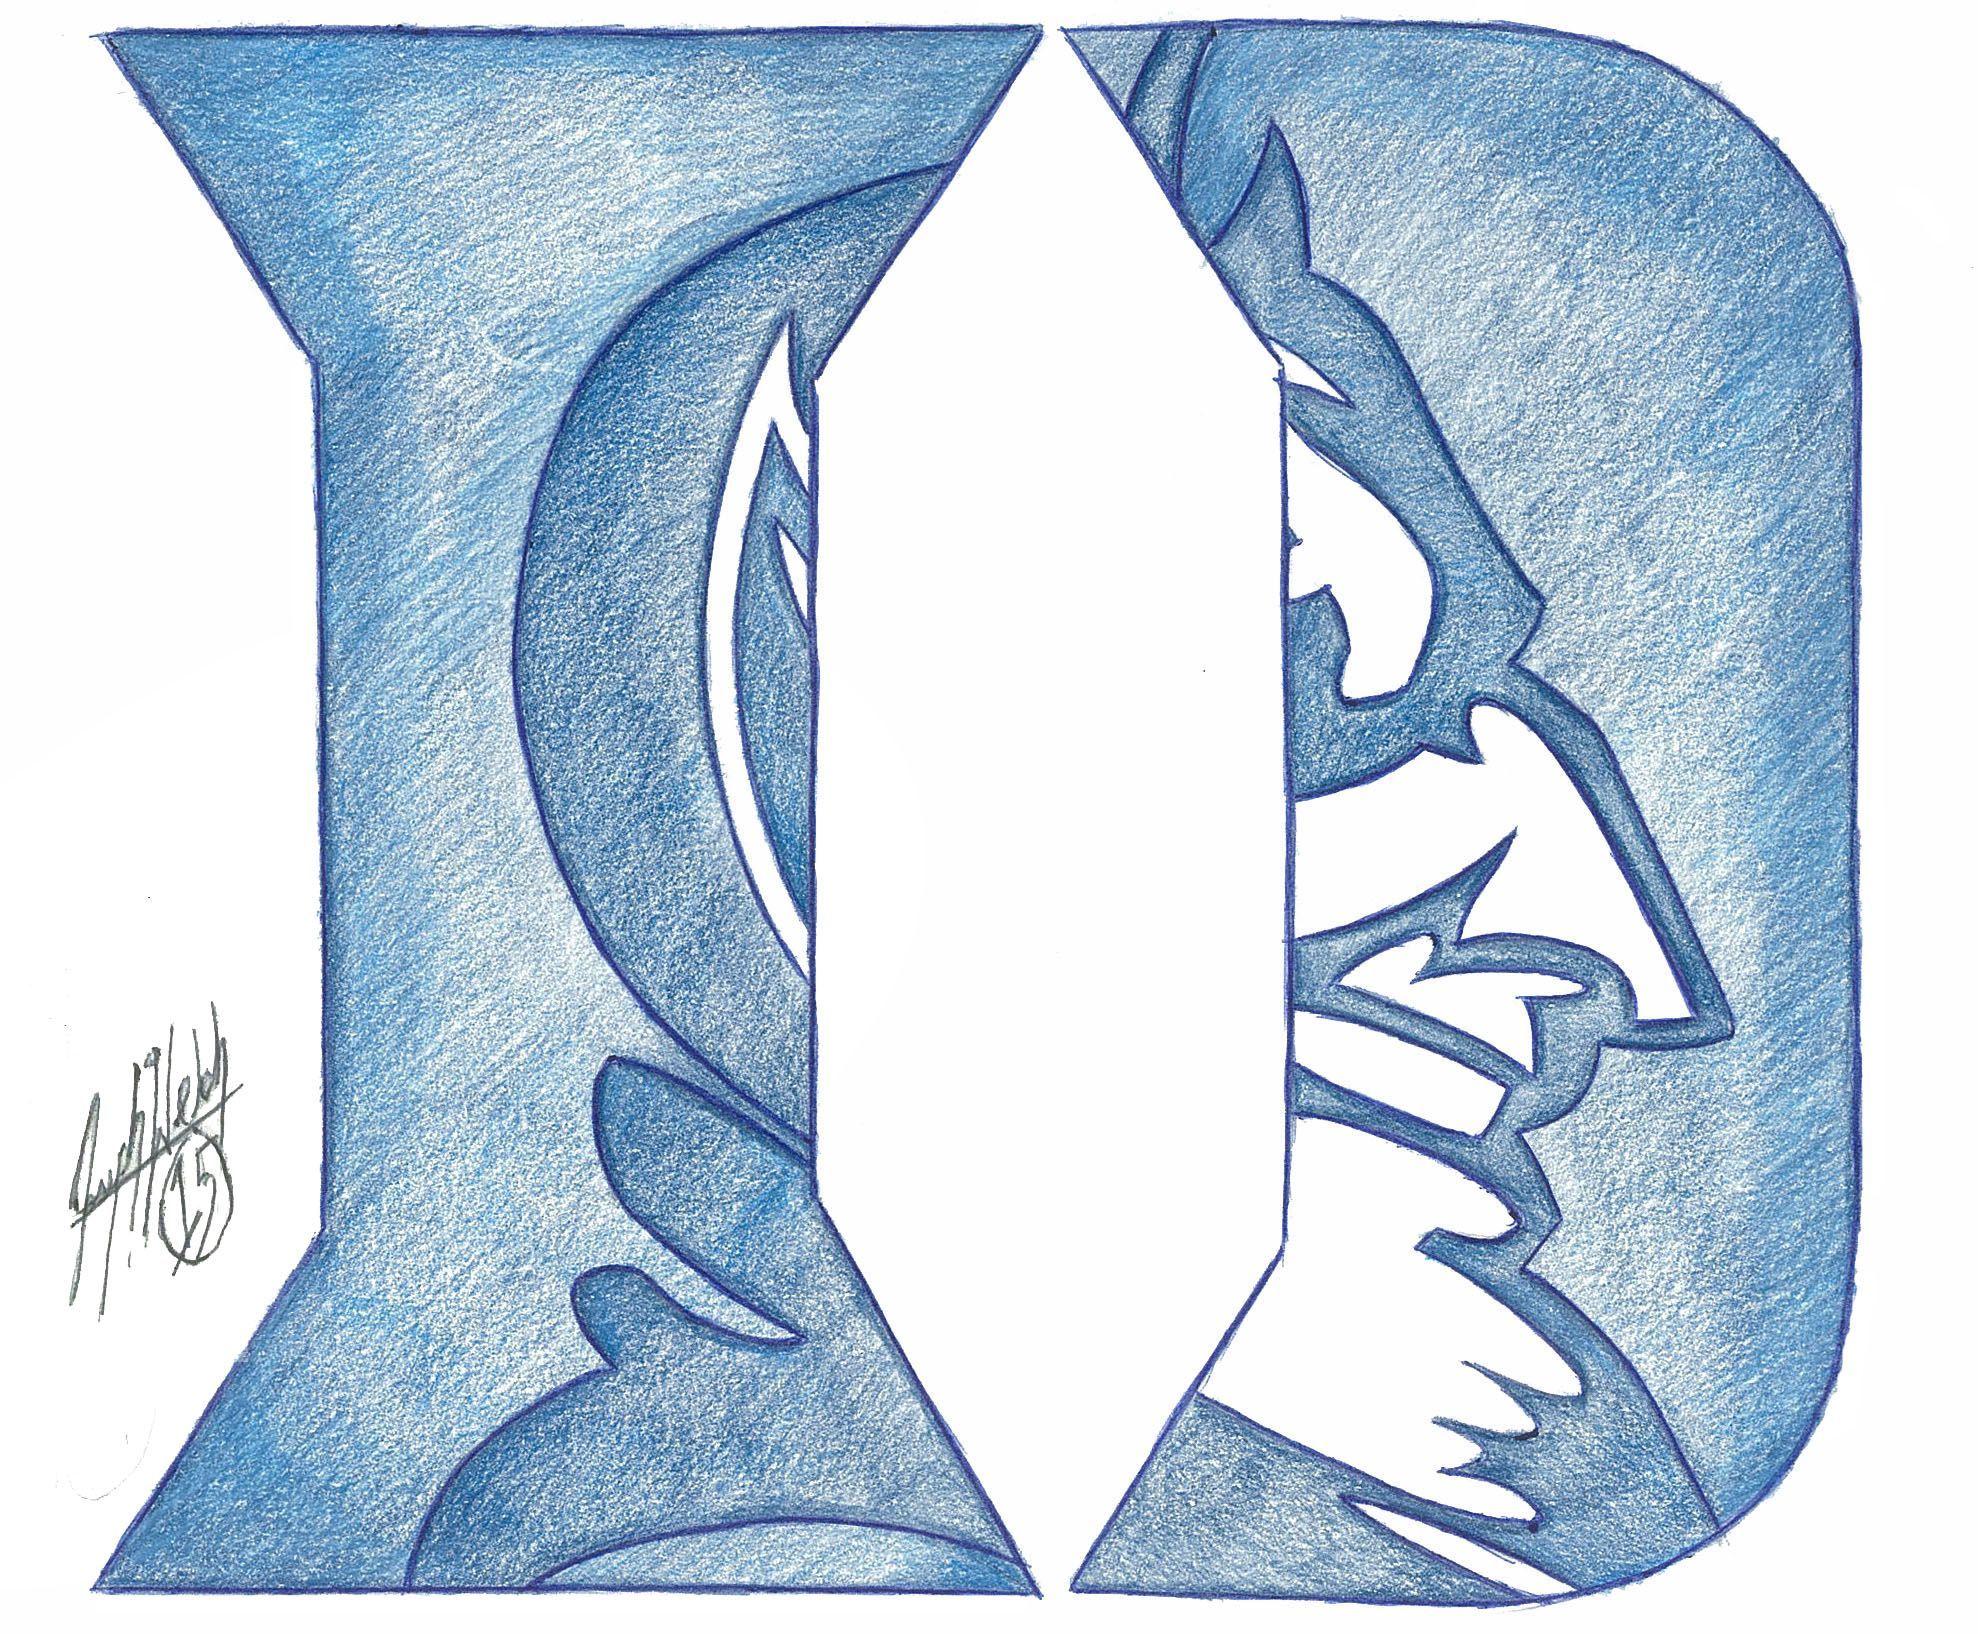 Duke University Blue Devils Logo - Duke Blue Devils | Drawings & Fine Art | Duke basketball, Duke blue ...